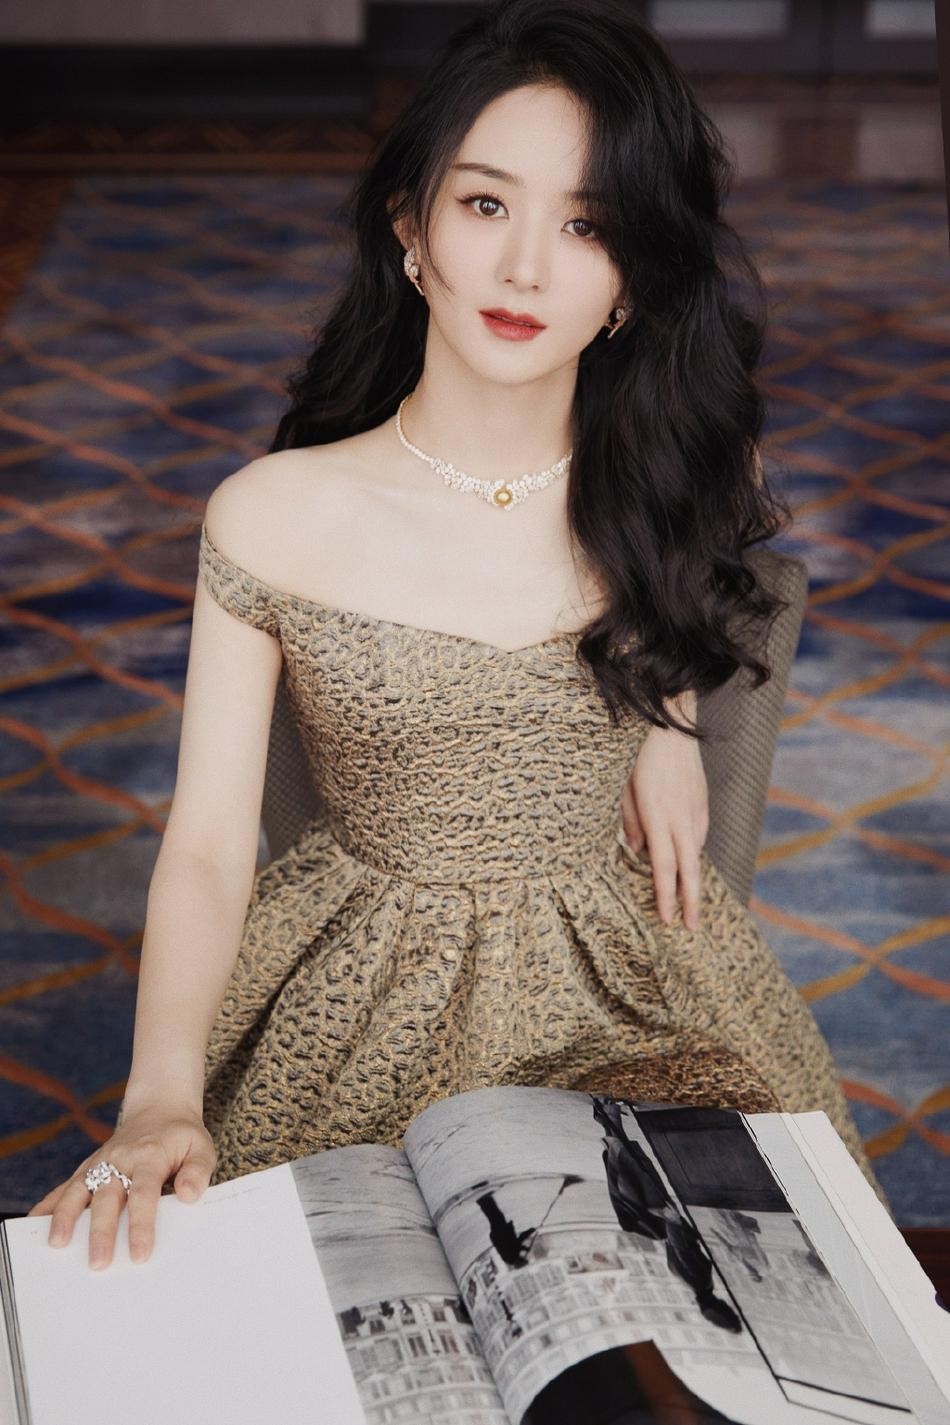 Triệu Lệ Dĩnh, Dương Tử diện váy trắng xinh đẹp khiến fans reo hò